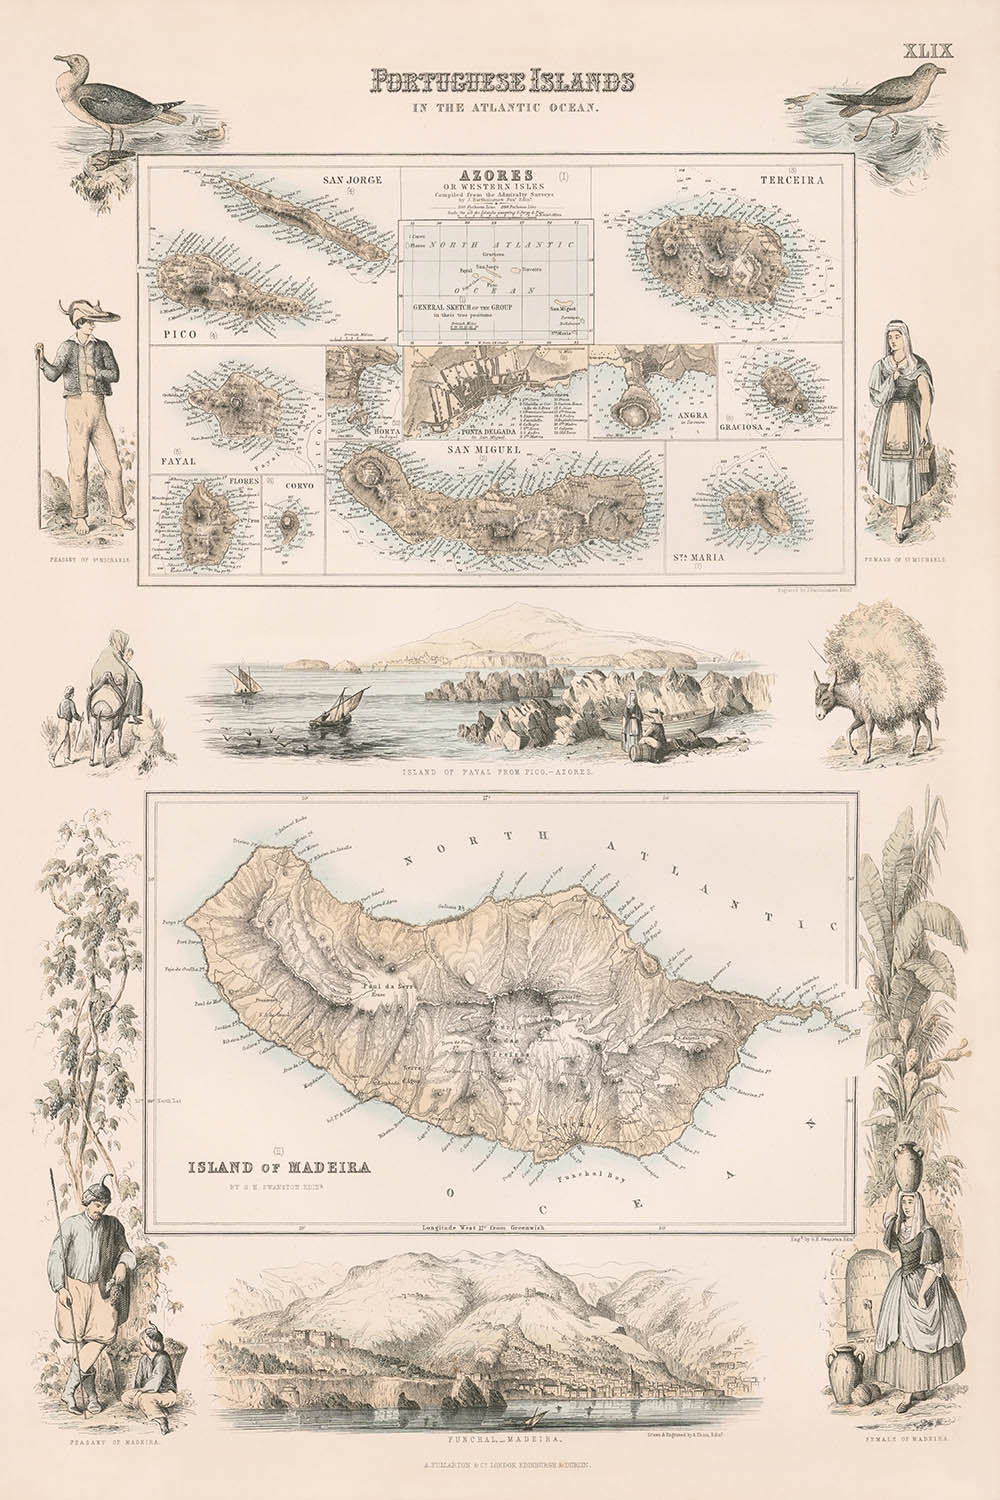 Old Map of Azores & Madeira, 1865: Portuguese Islands, Funchal, Angra, Ponta Delgada, Fayal, Pico